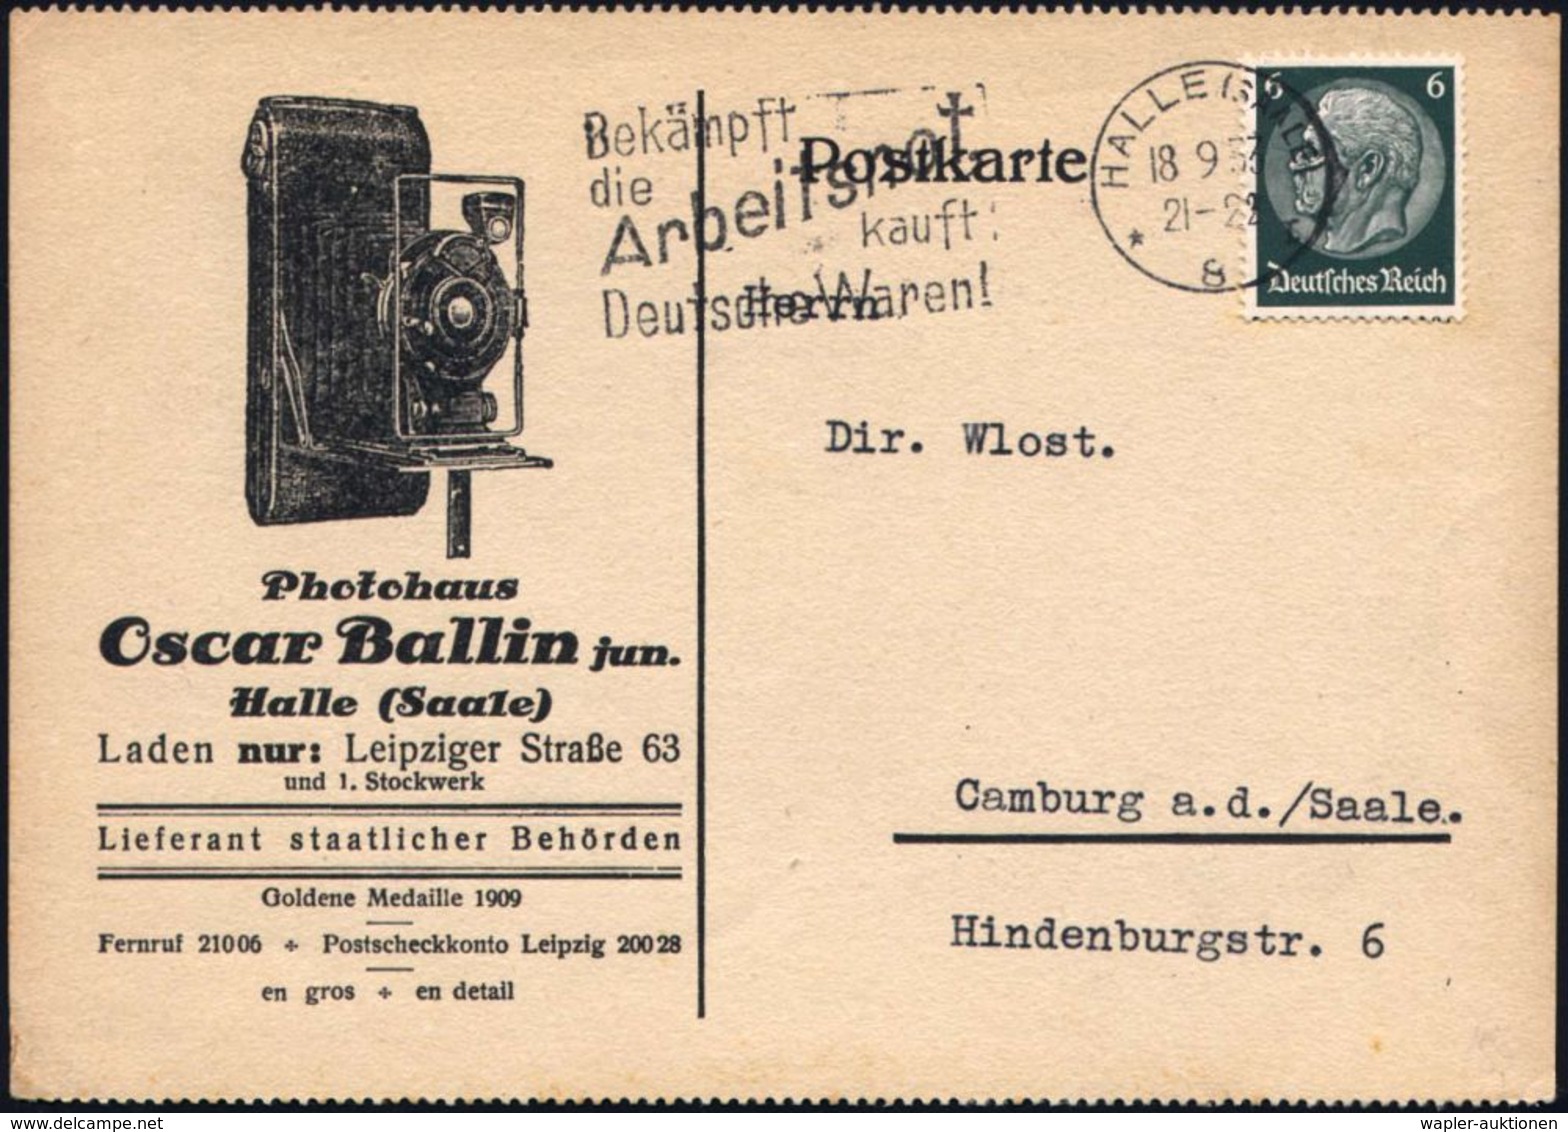 FOTOGRAFIE / KAMERAS / FOTOINDUSTRIE : HALLE (SAALE)/ *8I/ Bekämpft/ Die/ Arbeitsnot/ Kauft/ Deutsche Waren! 1933 (18.9. - Photographie